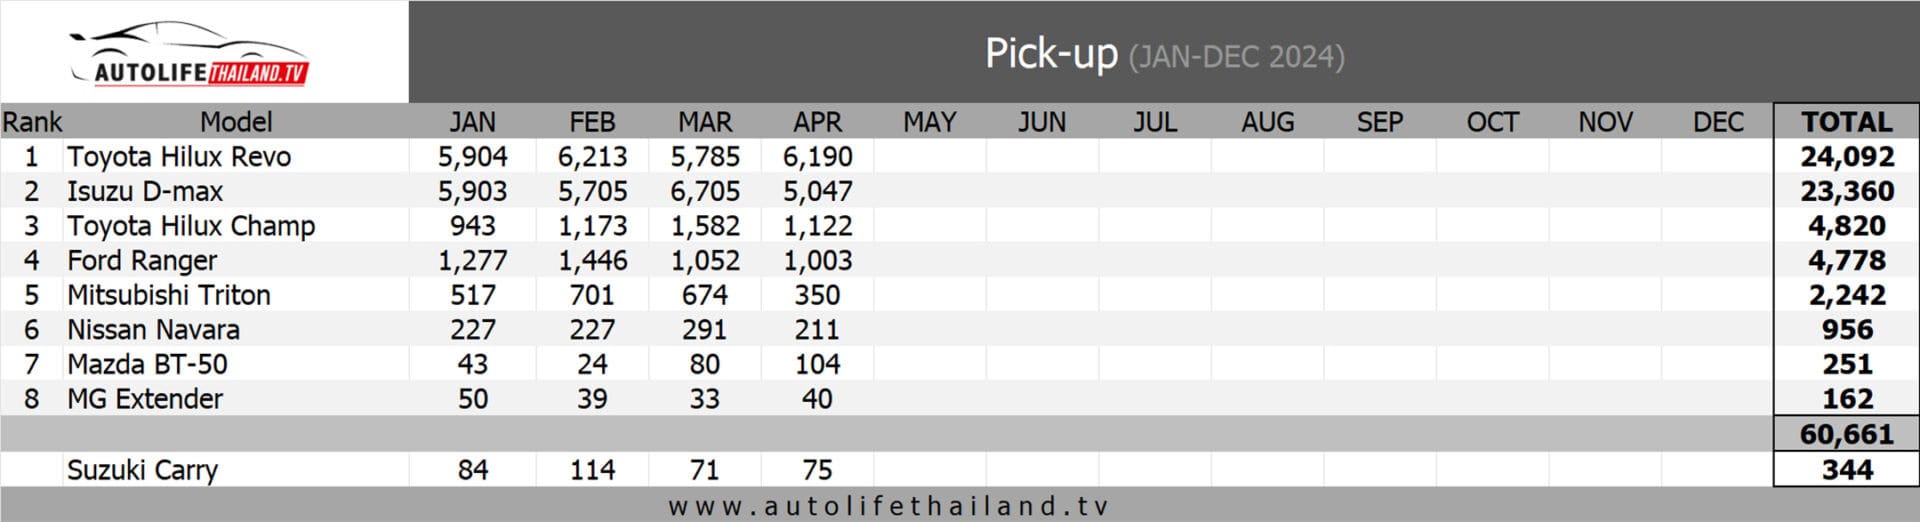 Doanh số các dòng xe bán tải 4 tháng đầu năm 2024 tại Thái Lan